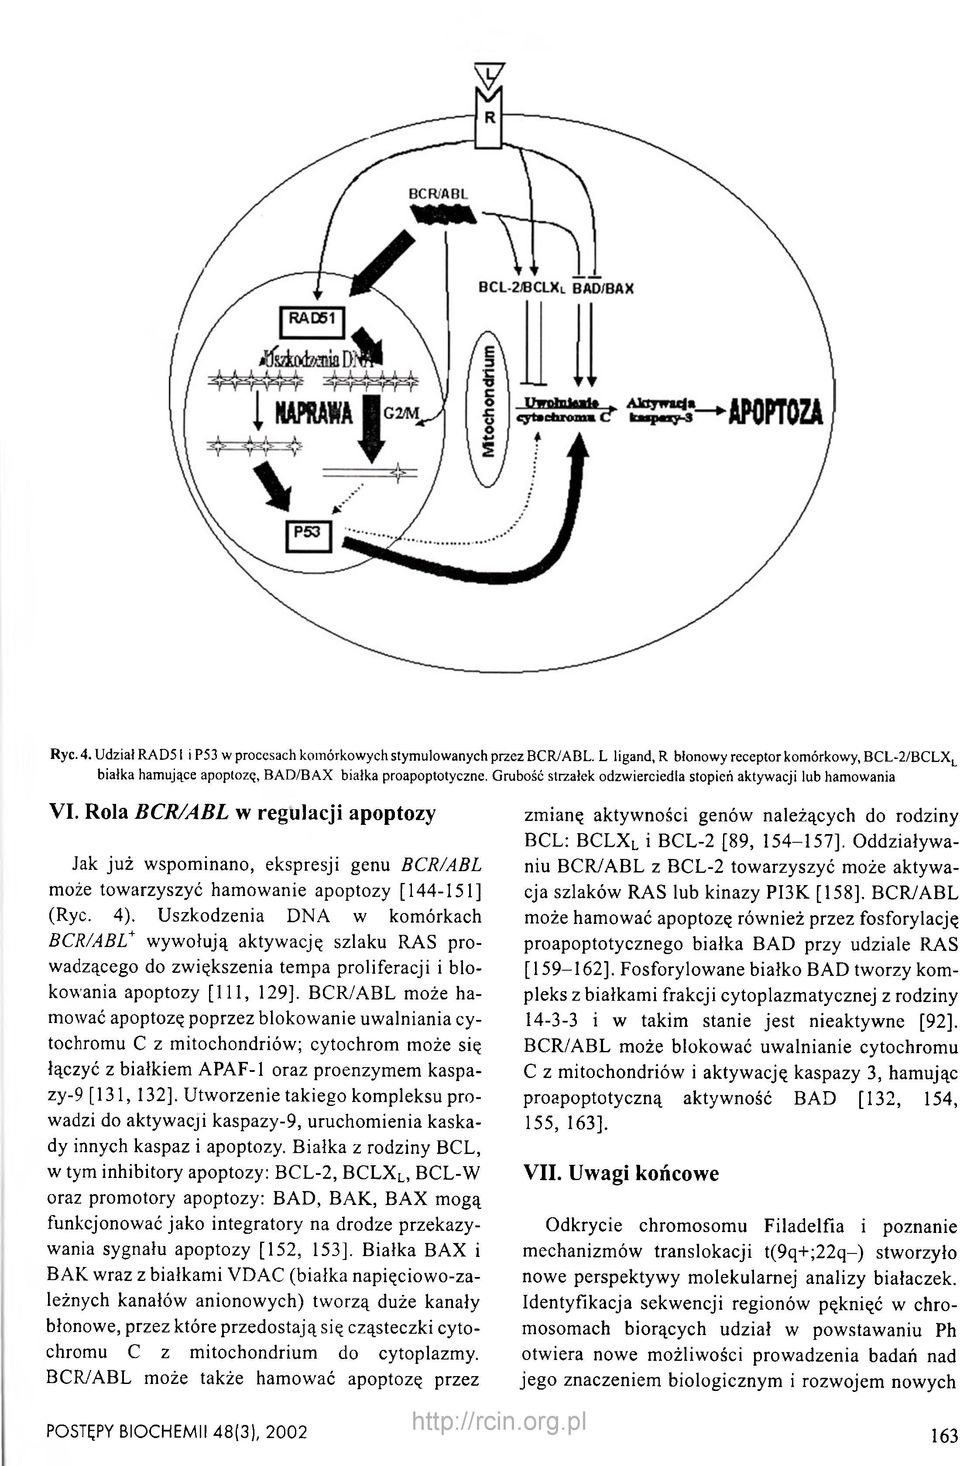 Uszkodzenia DNA w komórkach BCR/ABL+ wywołują aktywację szlaku RAS prowadzącego do zwiększenia tempa proliferacji i blokowania apoptozy [111, 129], BCR/ABL może hamować apoptozę poprzez blokowanie